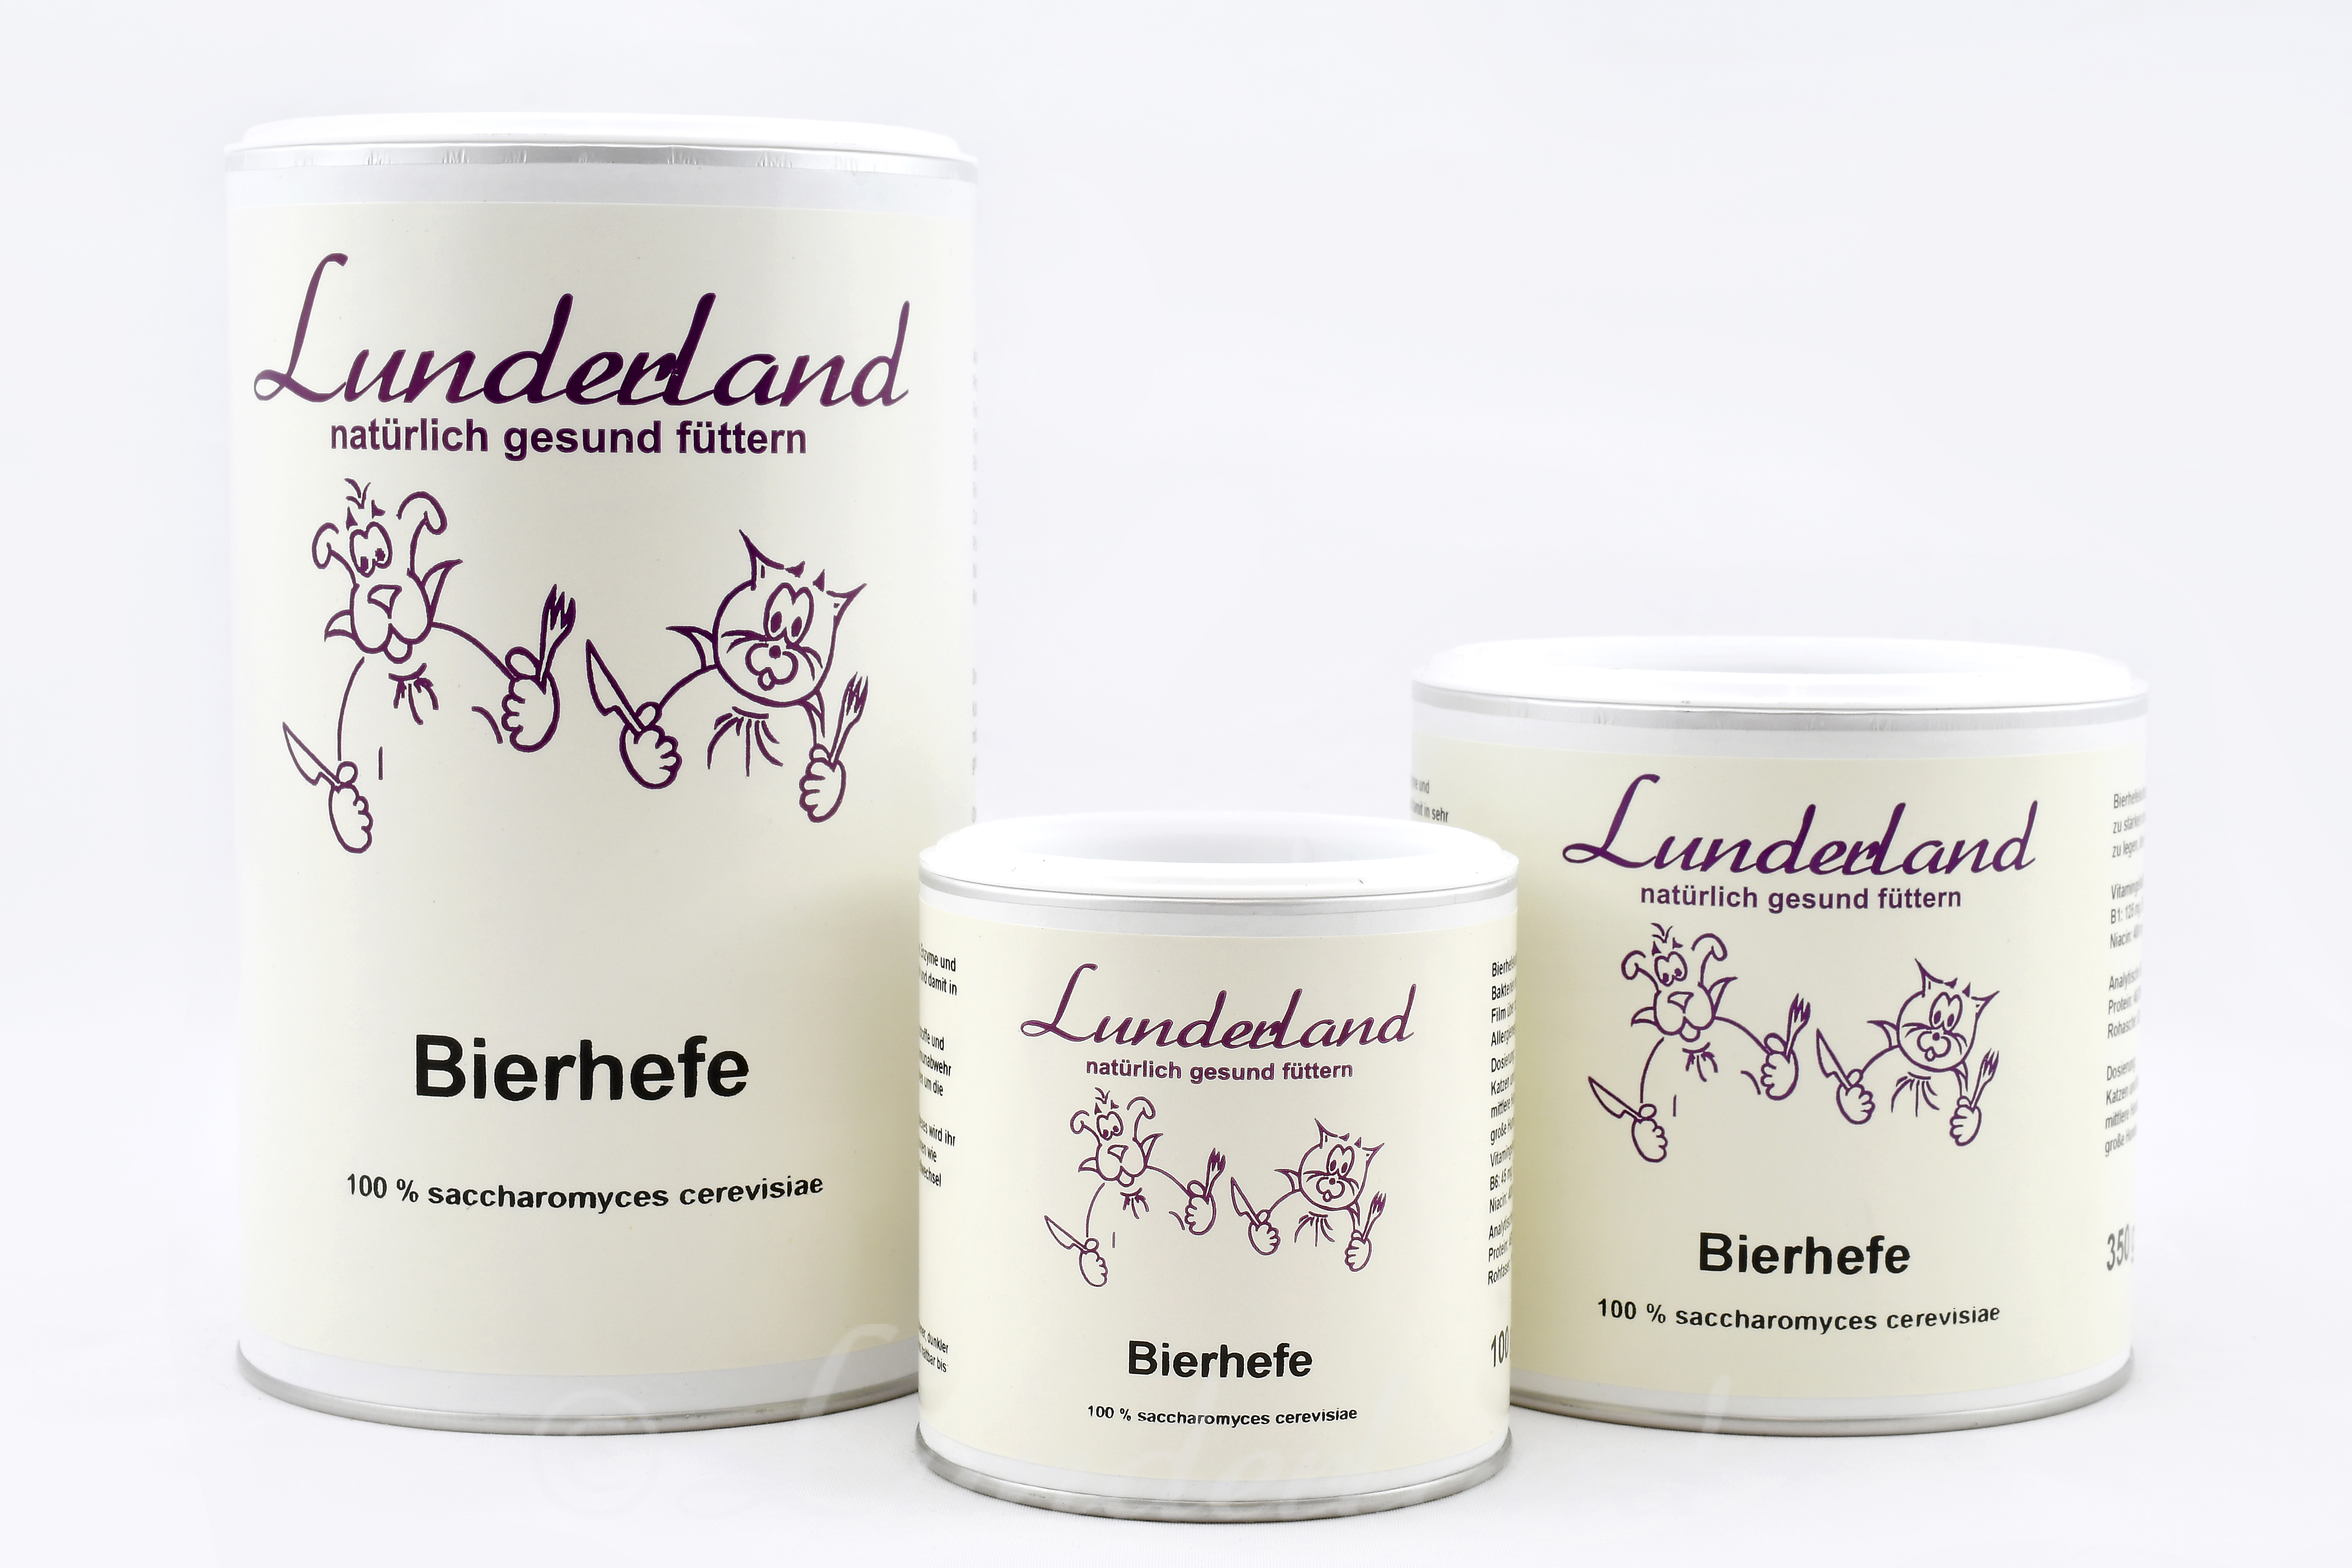 Lunderland Bierhefe